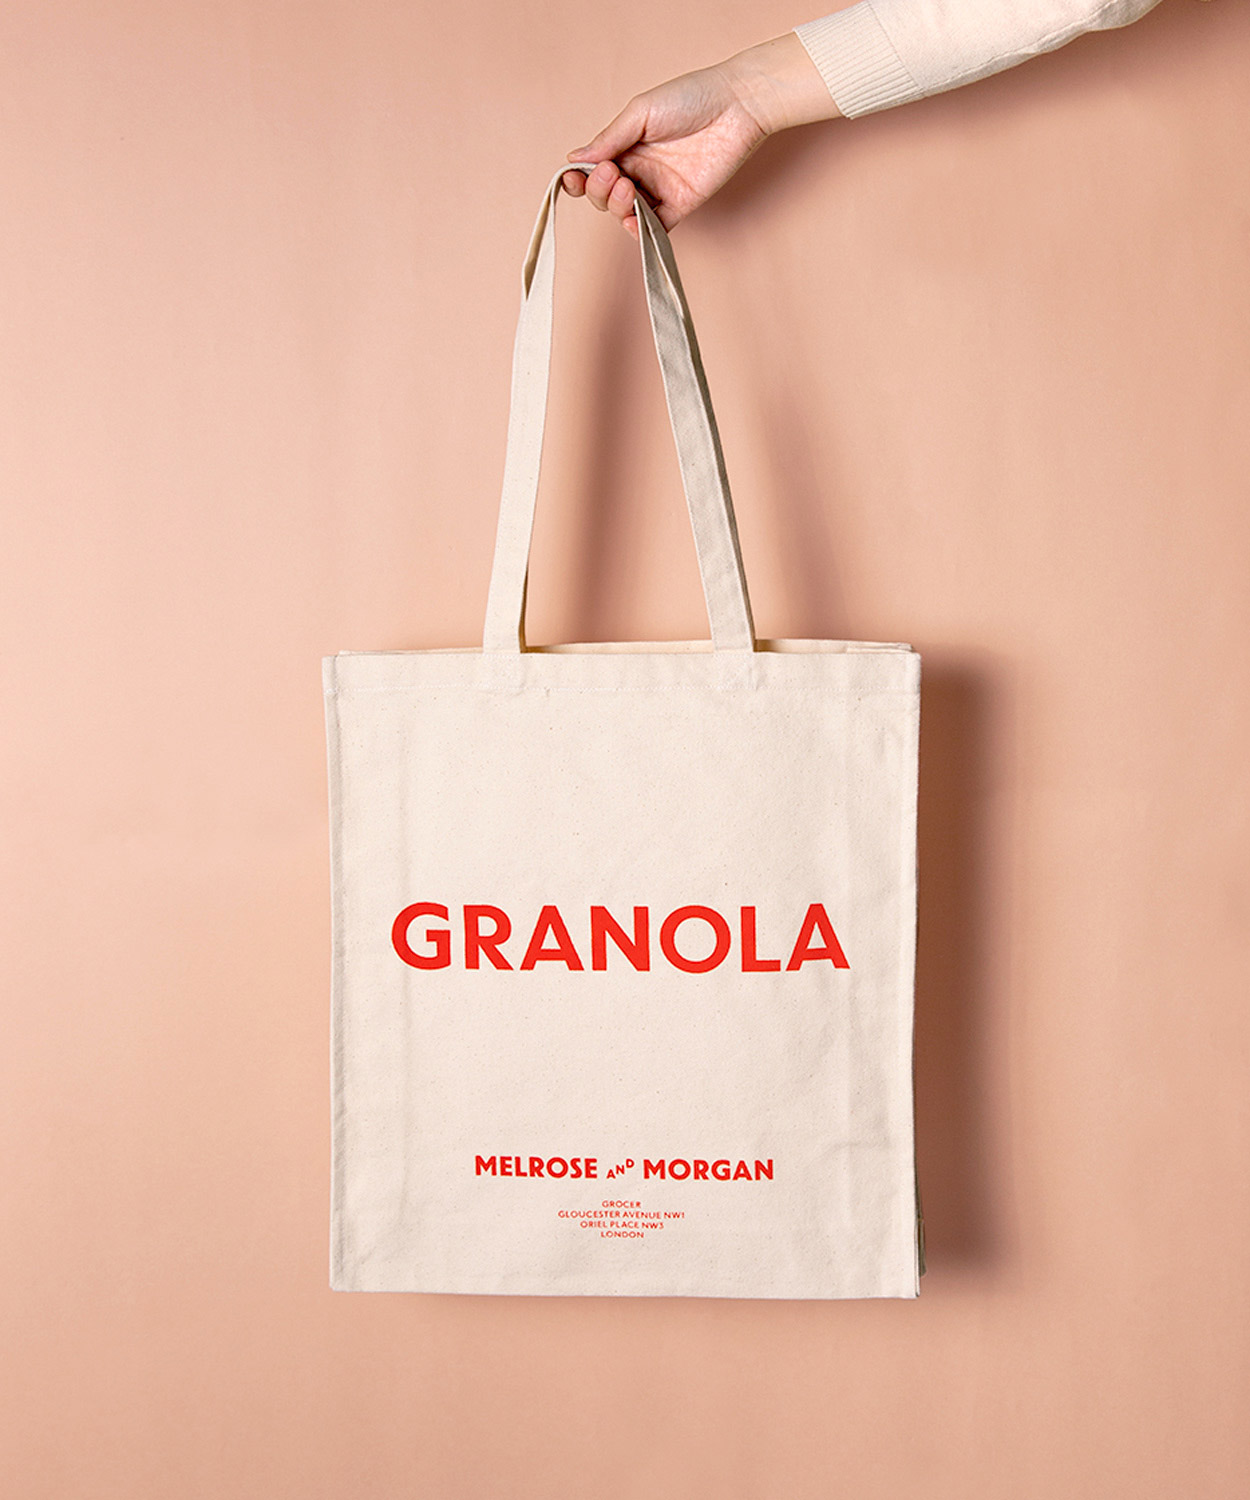 Melrose and Morgan（メルローズ アンド モーガン）大人気トートバッグのアーカイブロゴが限定復刻　GRANOLA